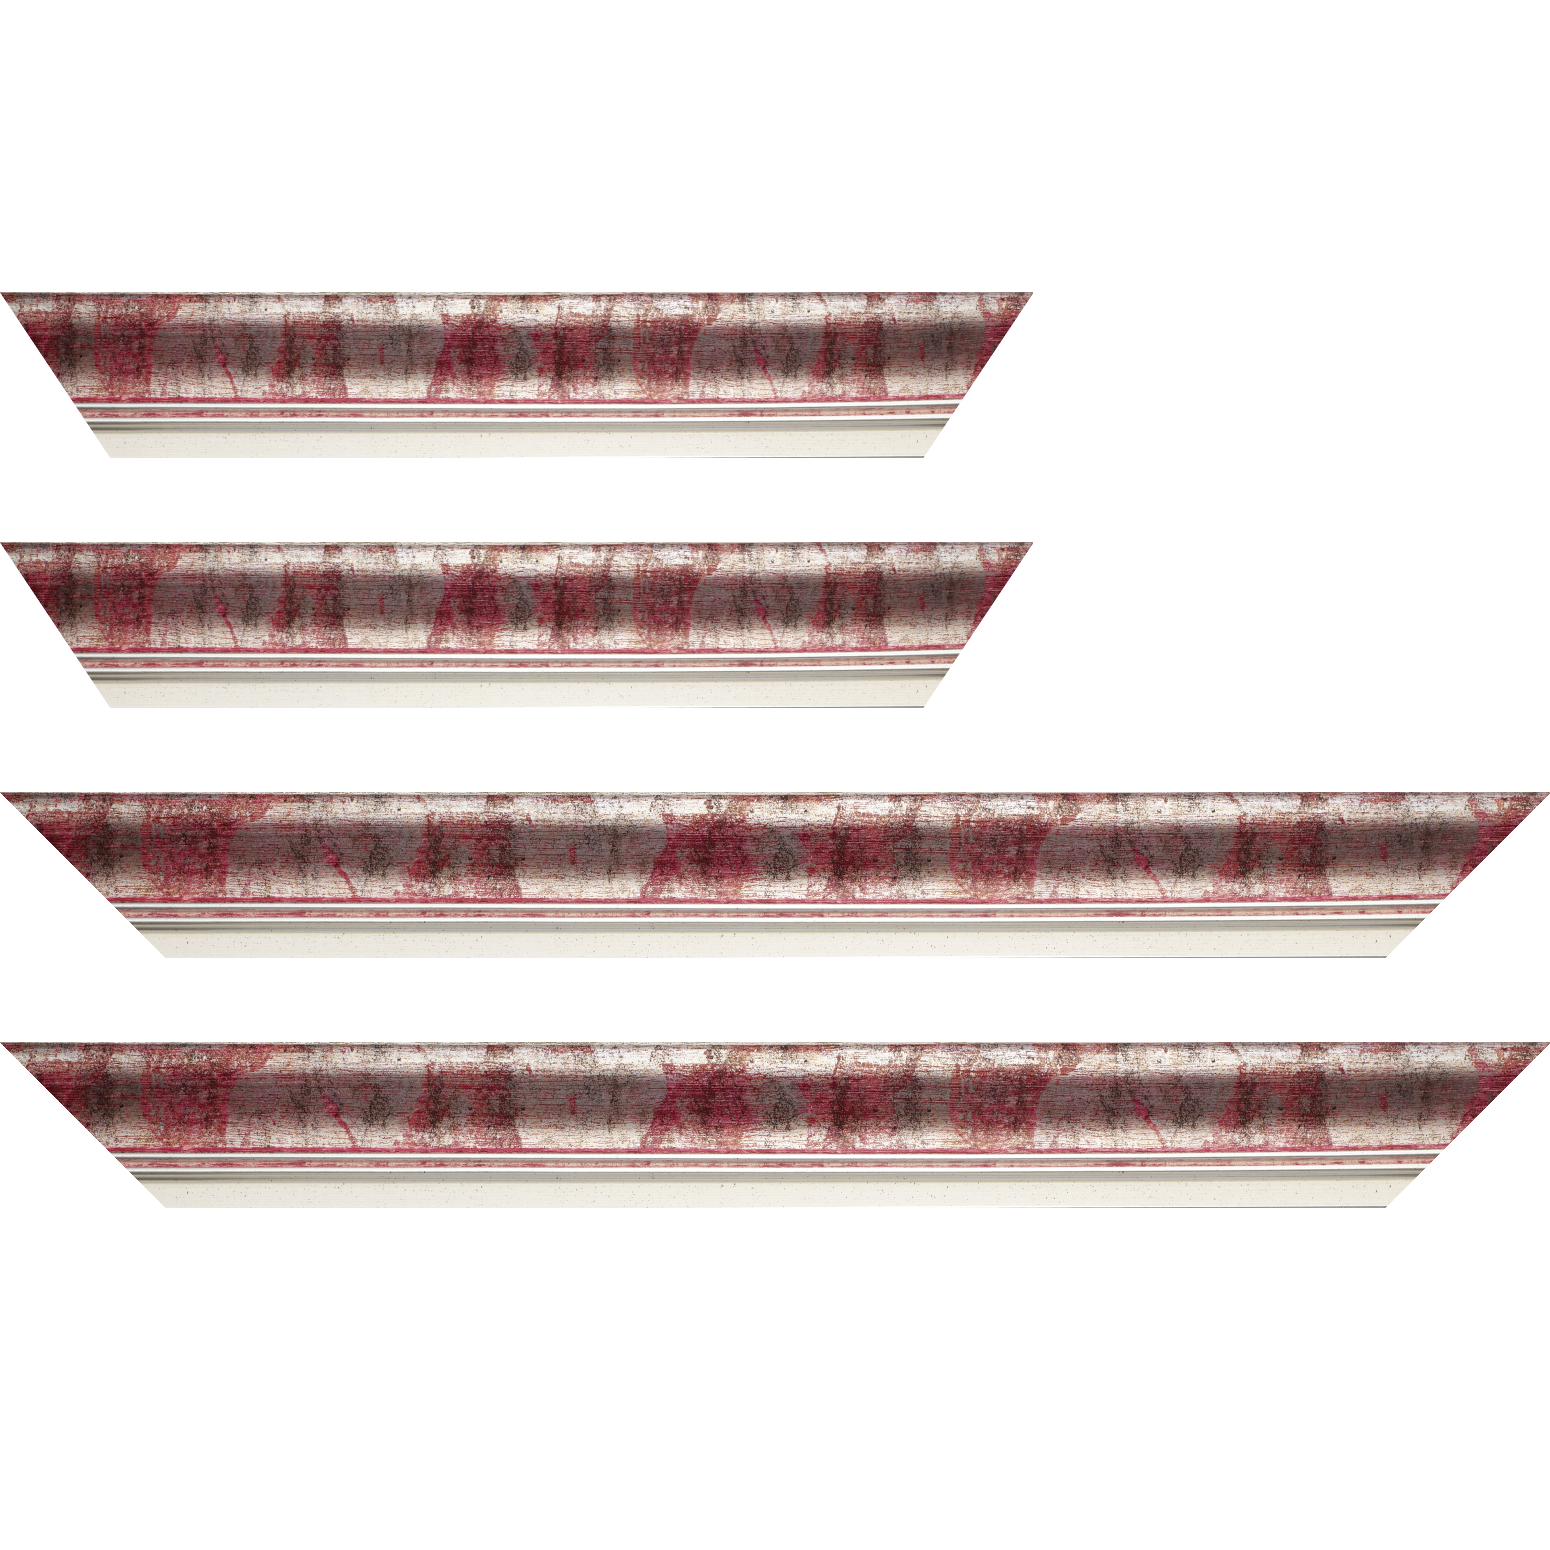 Baguette bois profil incurvé largeur 5.7cm de couleur rose fushia fond argent marie louise blanche mouchetée filet argent intégré - 84.1x118.9